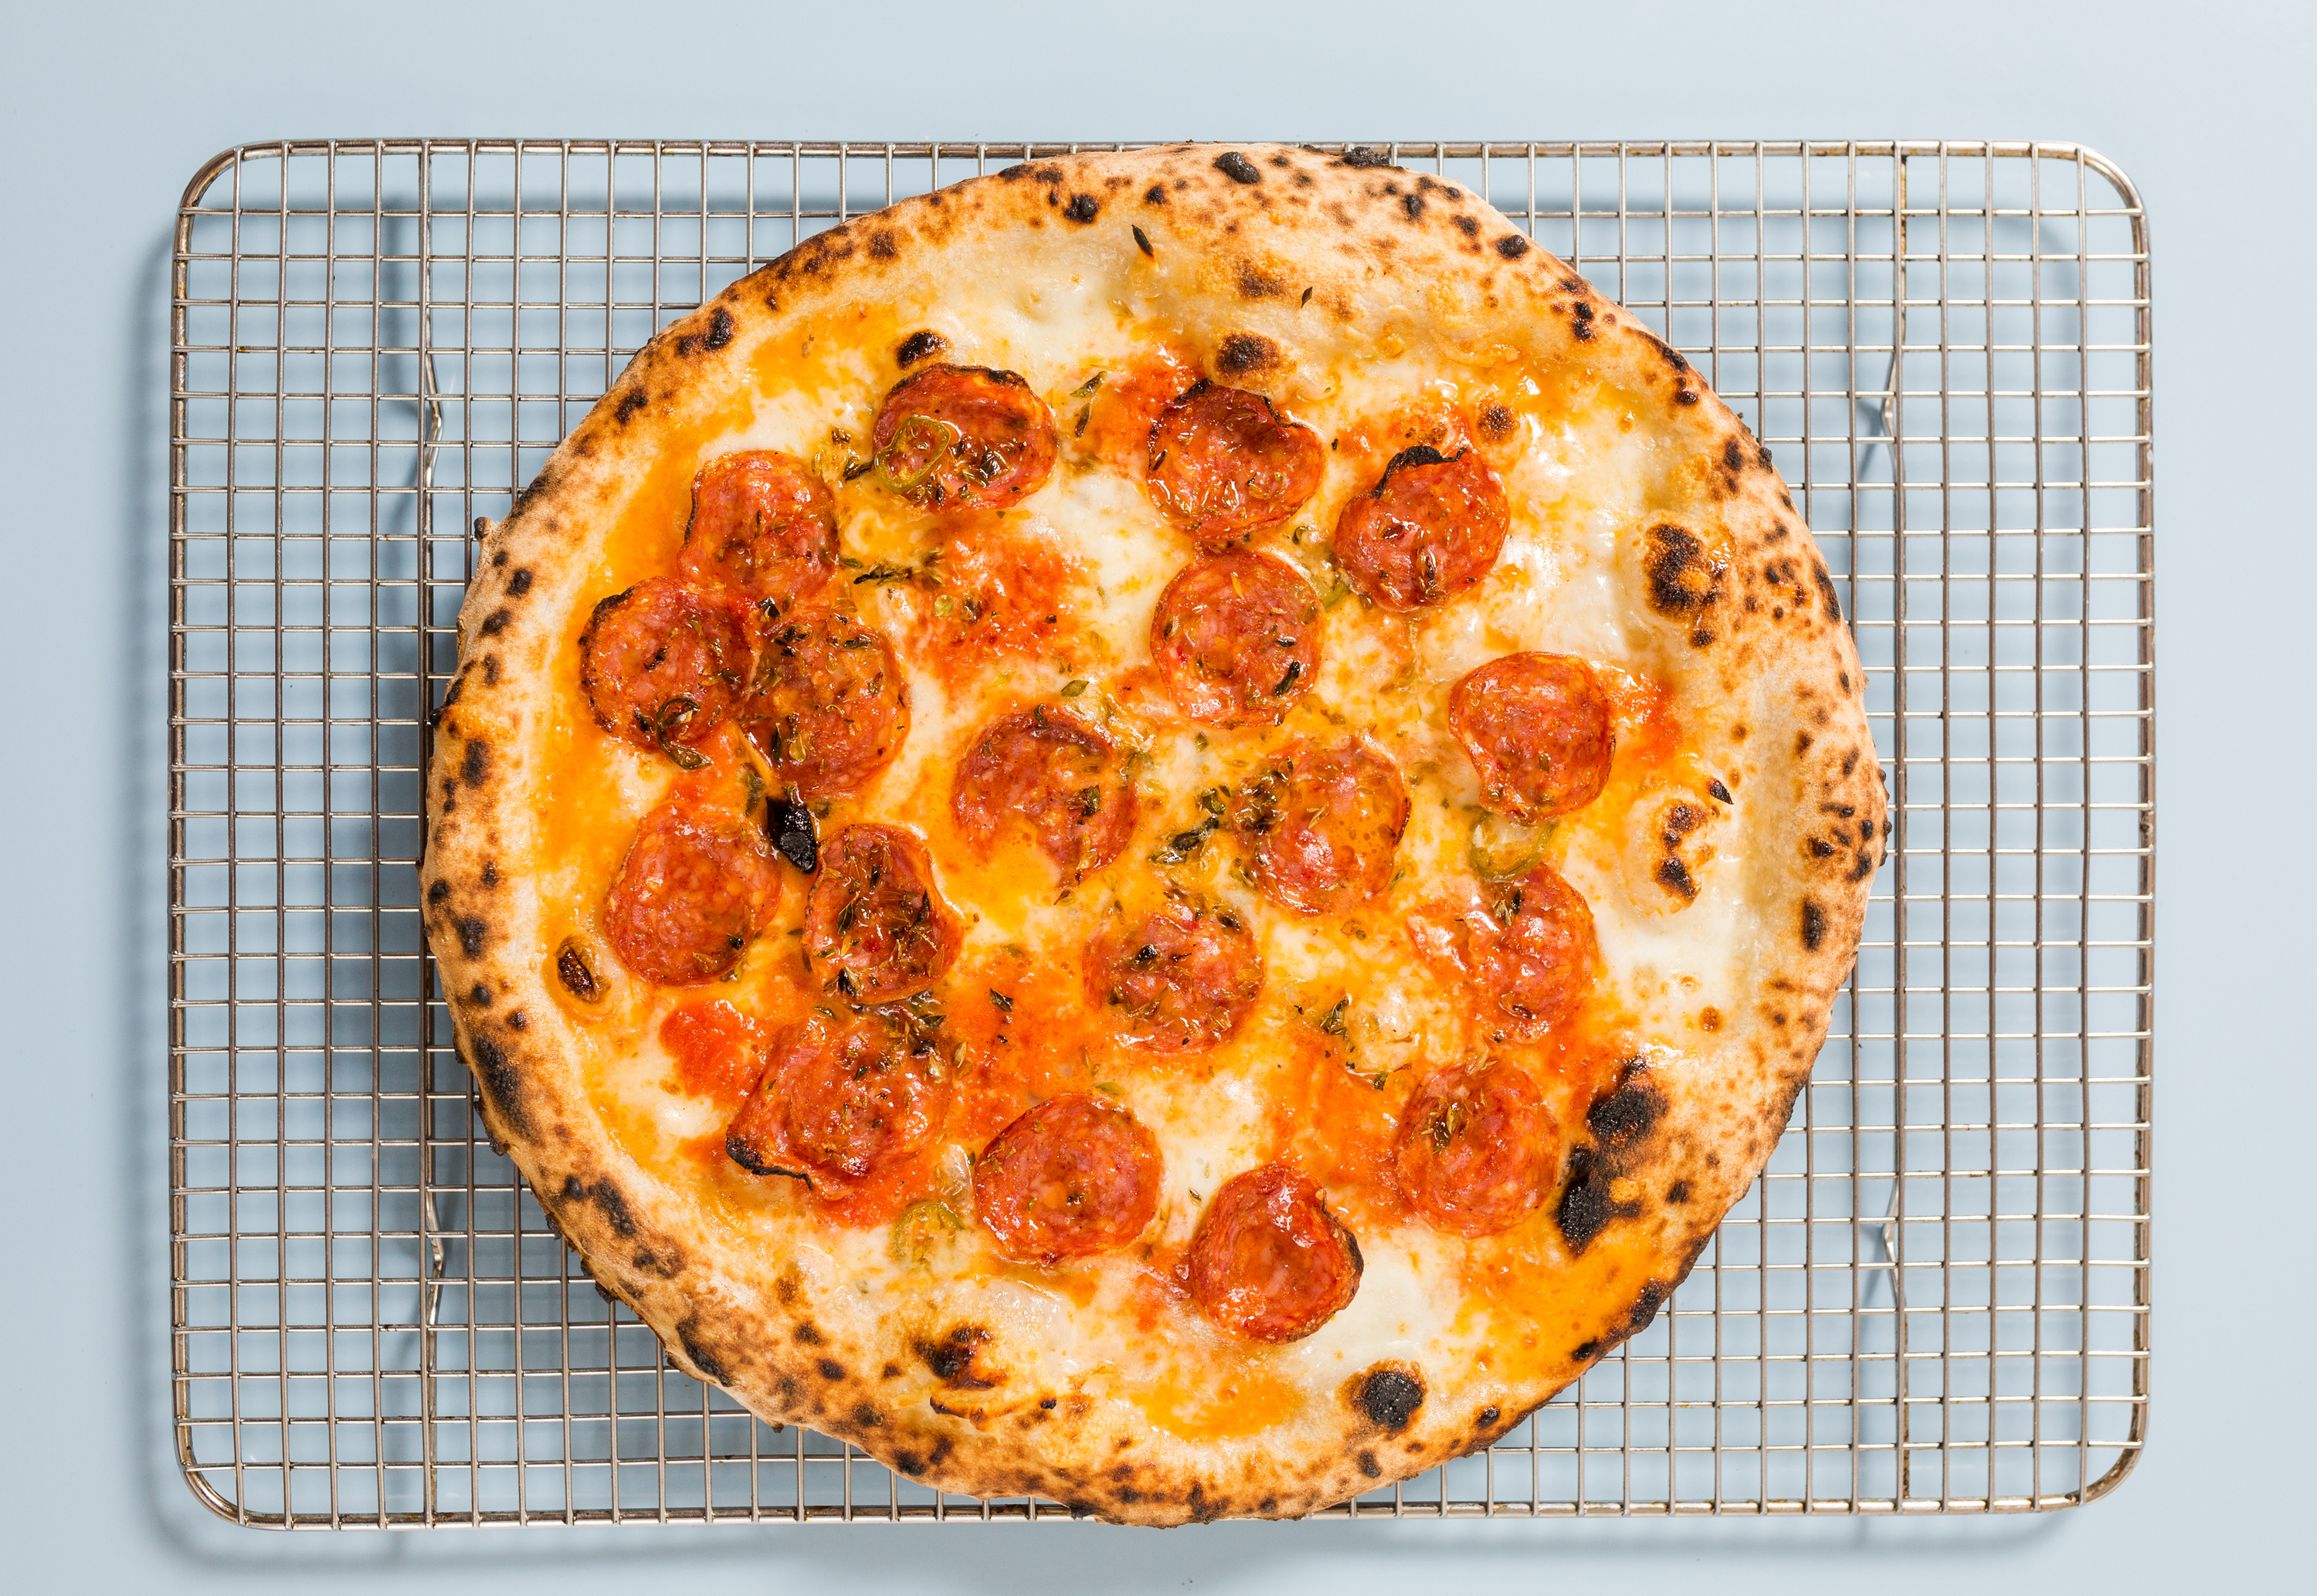 Os melhores pizzarias Ouro Fino - Tripadvisor